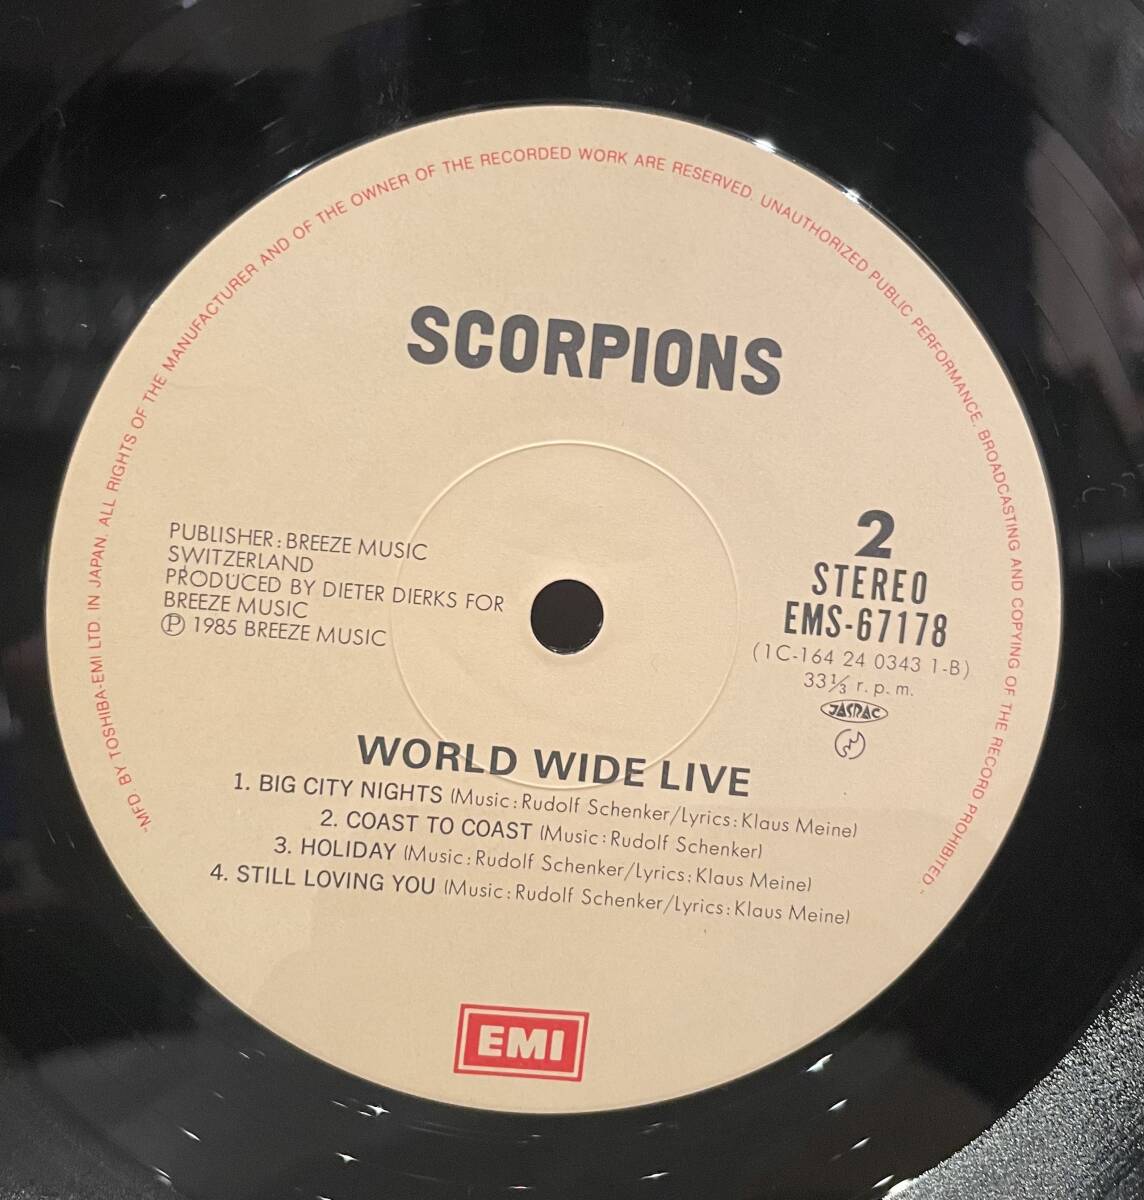 ◇国内盤/帯付!2枚組LP◇スコーピオンズ Scorpions/ワールドワイドライブ World Wide Live EMS-67178-79 HR/HM ライブ盤_画像3